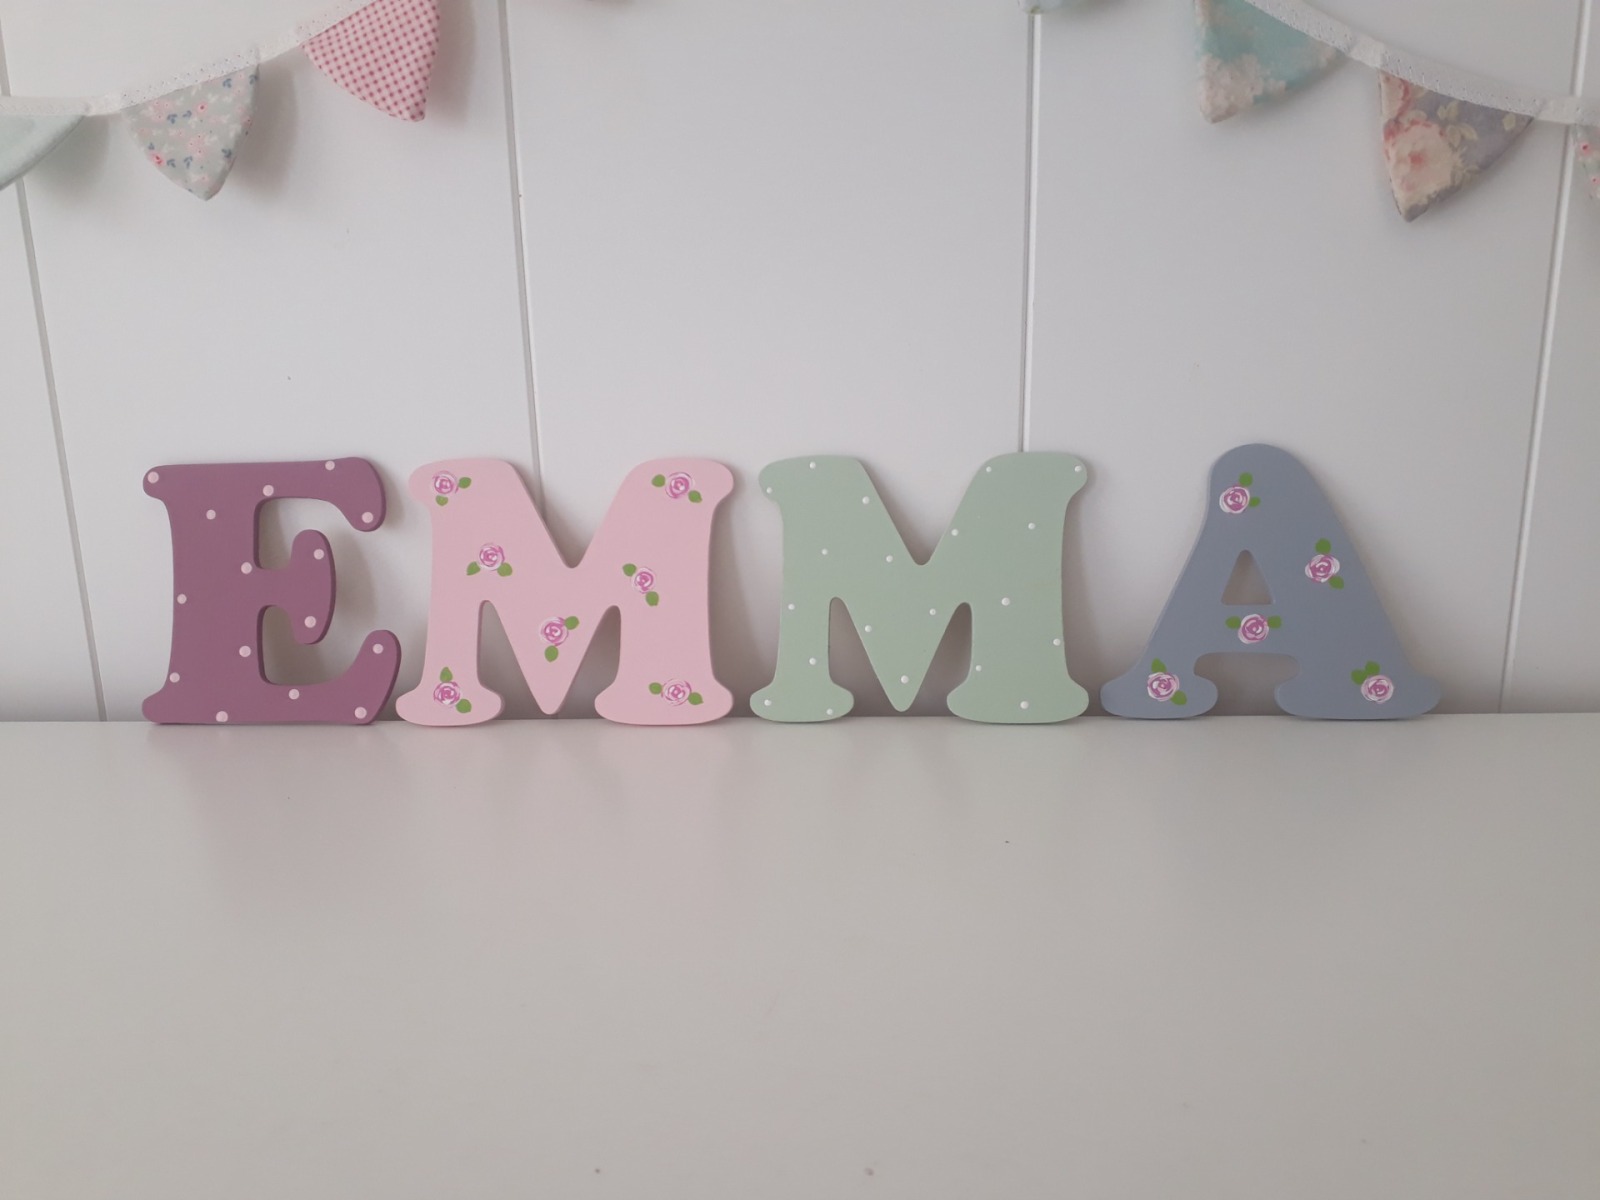 8cm Holzbuchstaben Kinderzimmer personalisiert in malve, rose, grau und mint